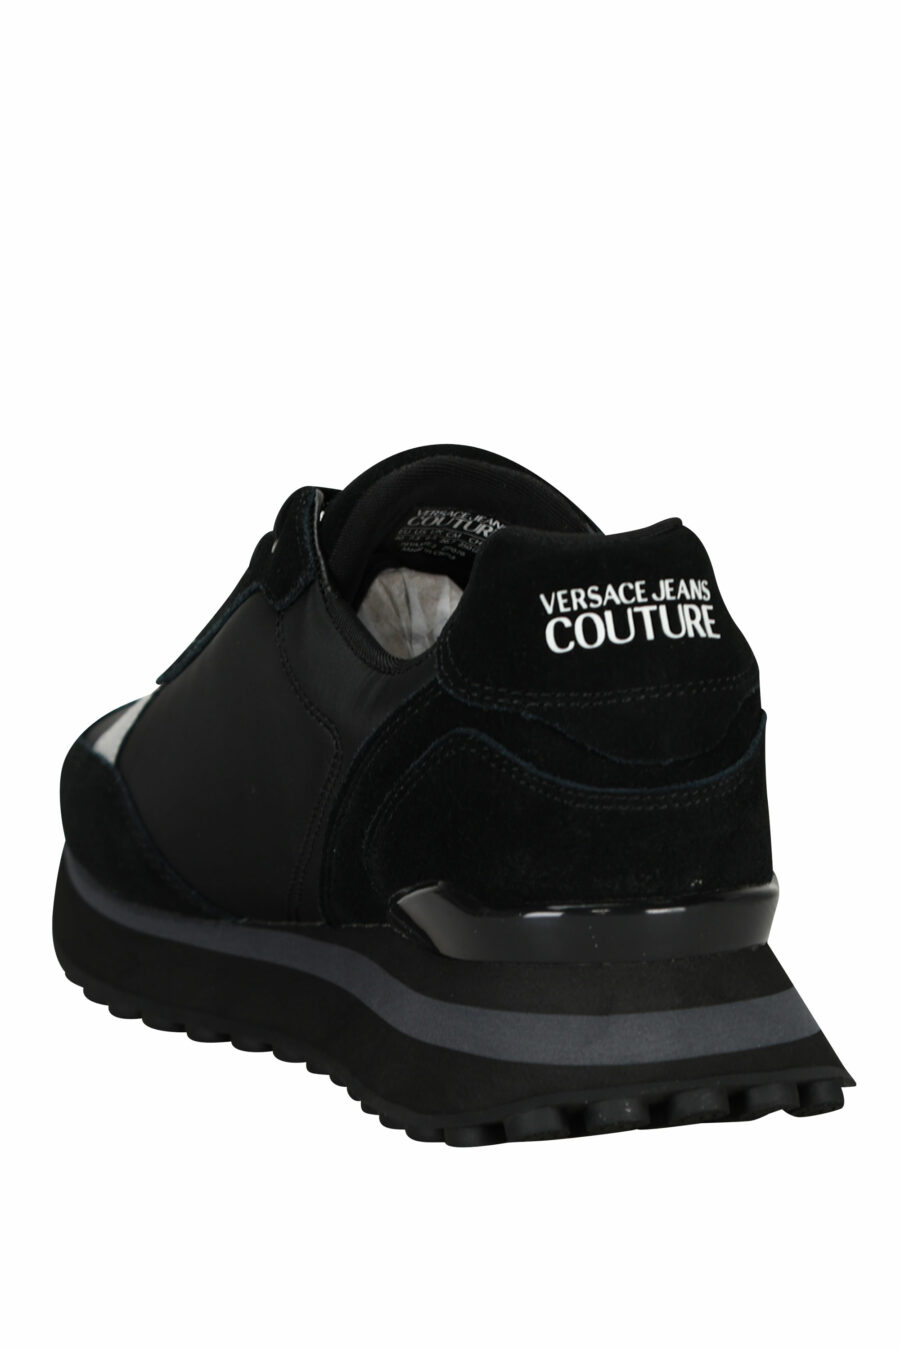 Zapatillas negras mix con minilogo blanco y suela negra - 8052019606362 3